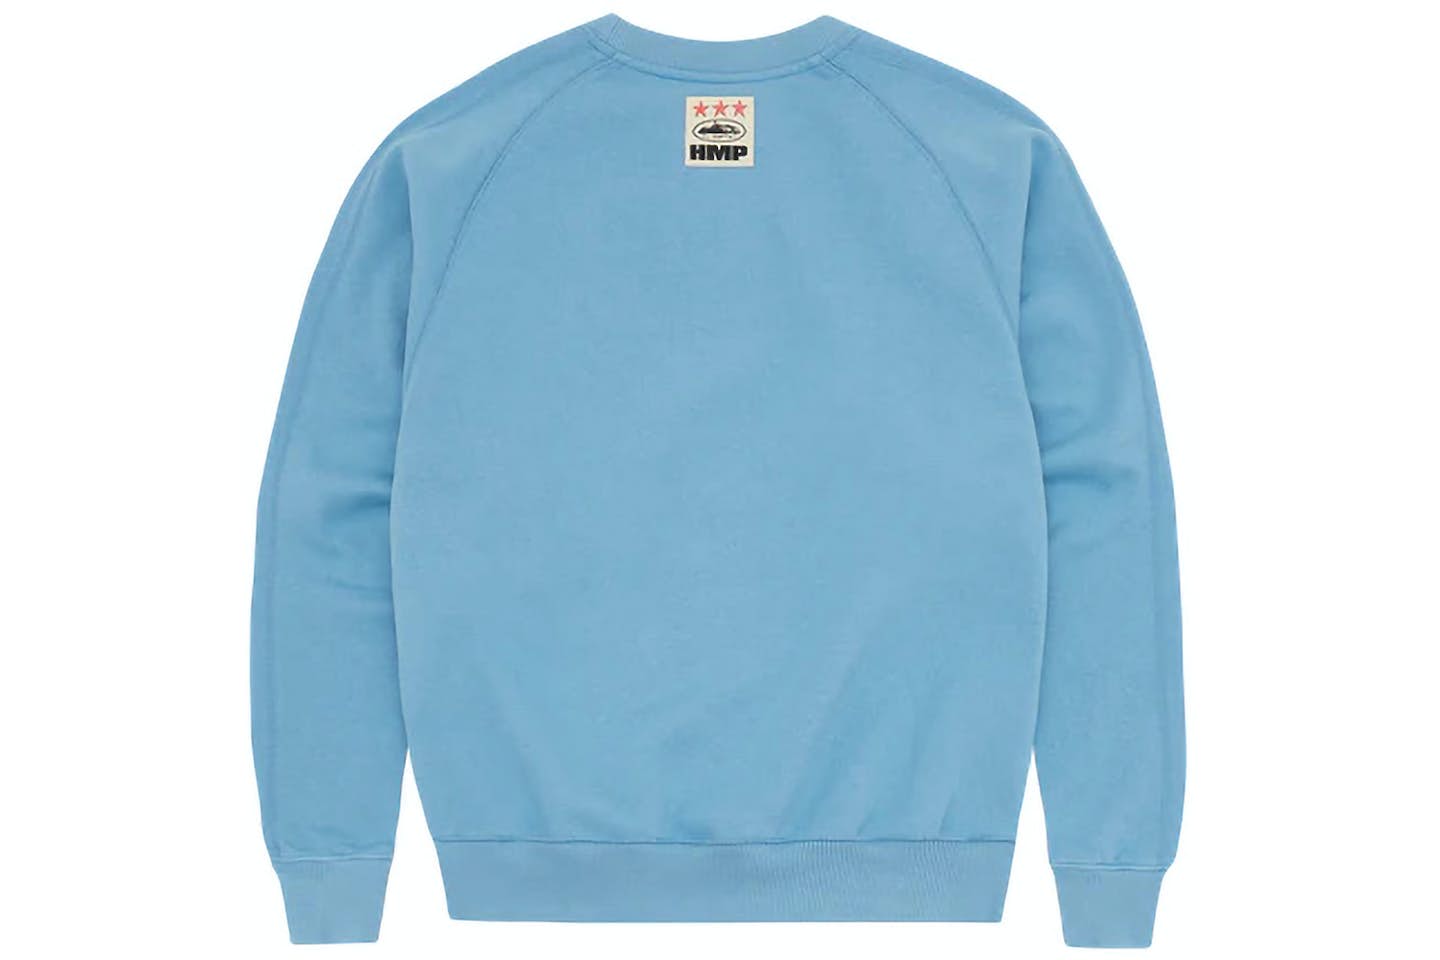 Corteiz HMP V2 Sweatshirt
Baby Blue